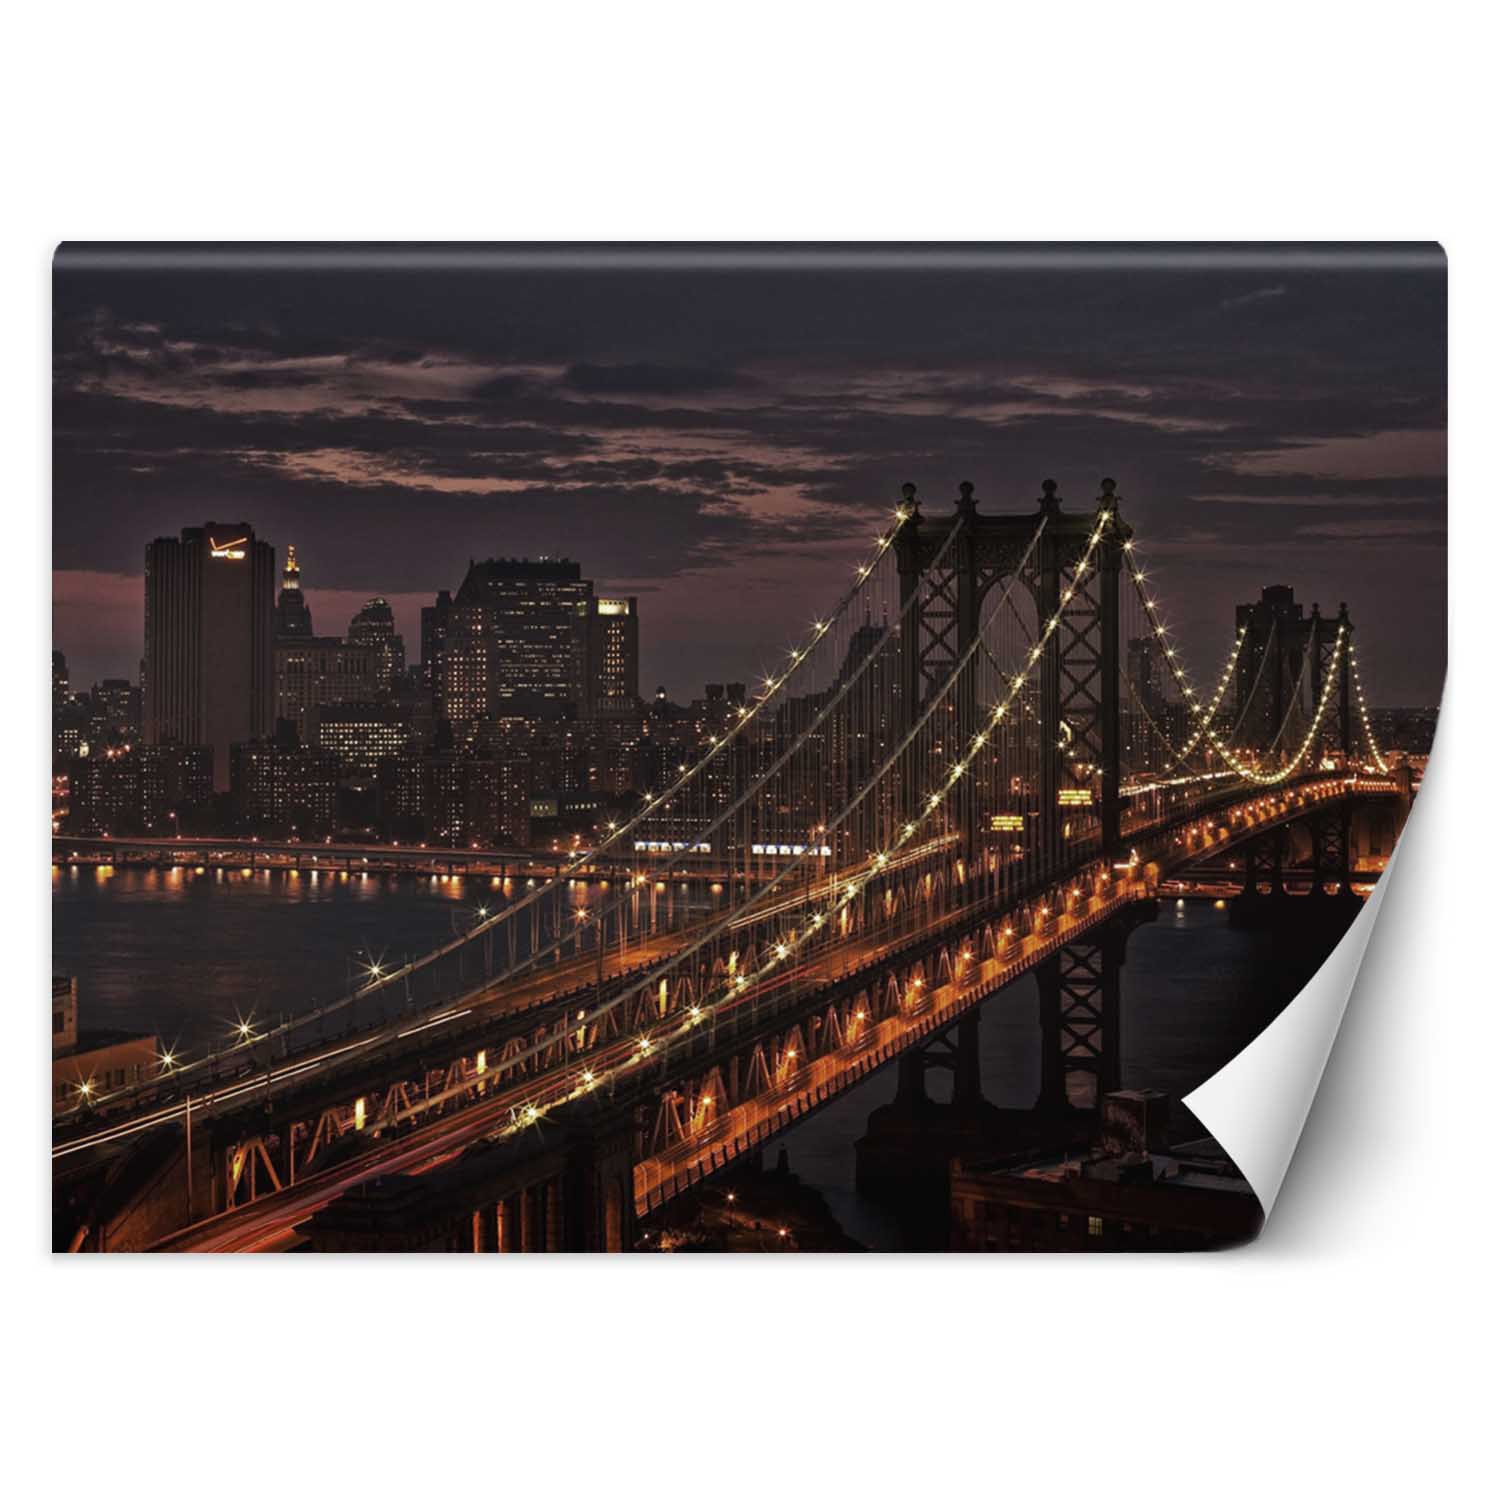 Trend24 – Behang – New York City Bridge – Vliesbehang – Fotobehang – Behang Woonkamer – 450x315x2 cm – Incl. behanglijm